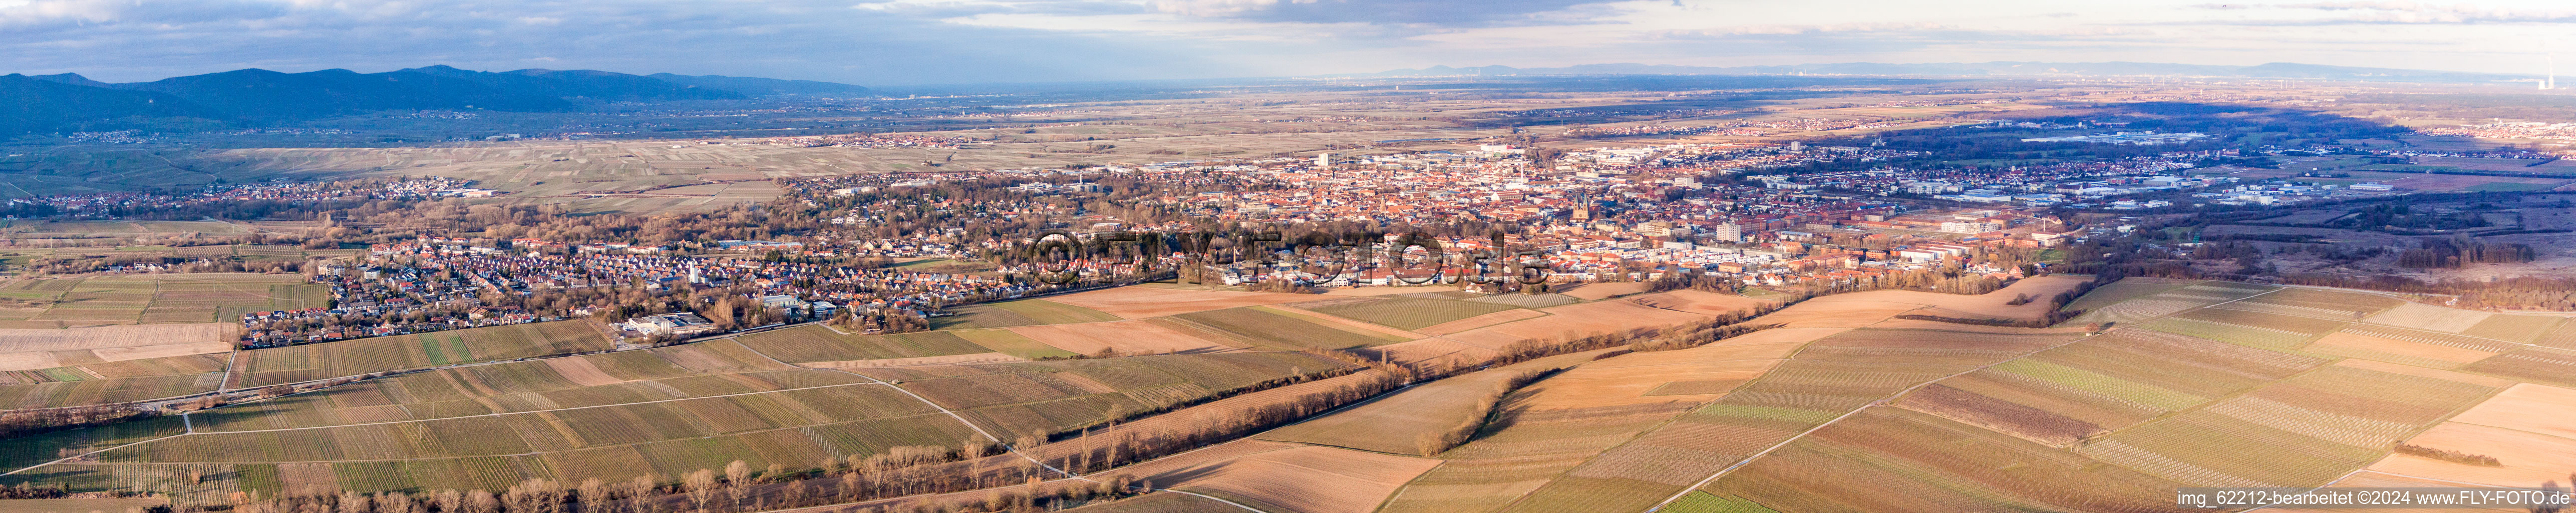 Luftbild von Panorama Perspektive Stadtgebiet mit Außenbezirken und Innenstadtbereich in Landau in der Pfalz im Bundesland Rheinland-Pfalz, Deutschland